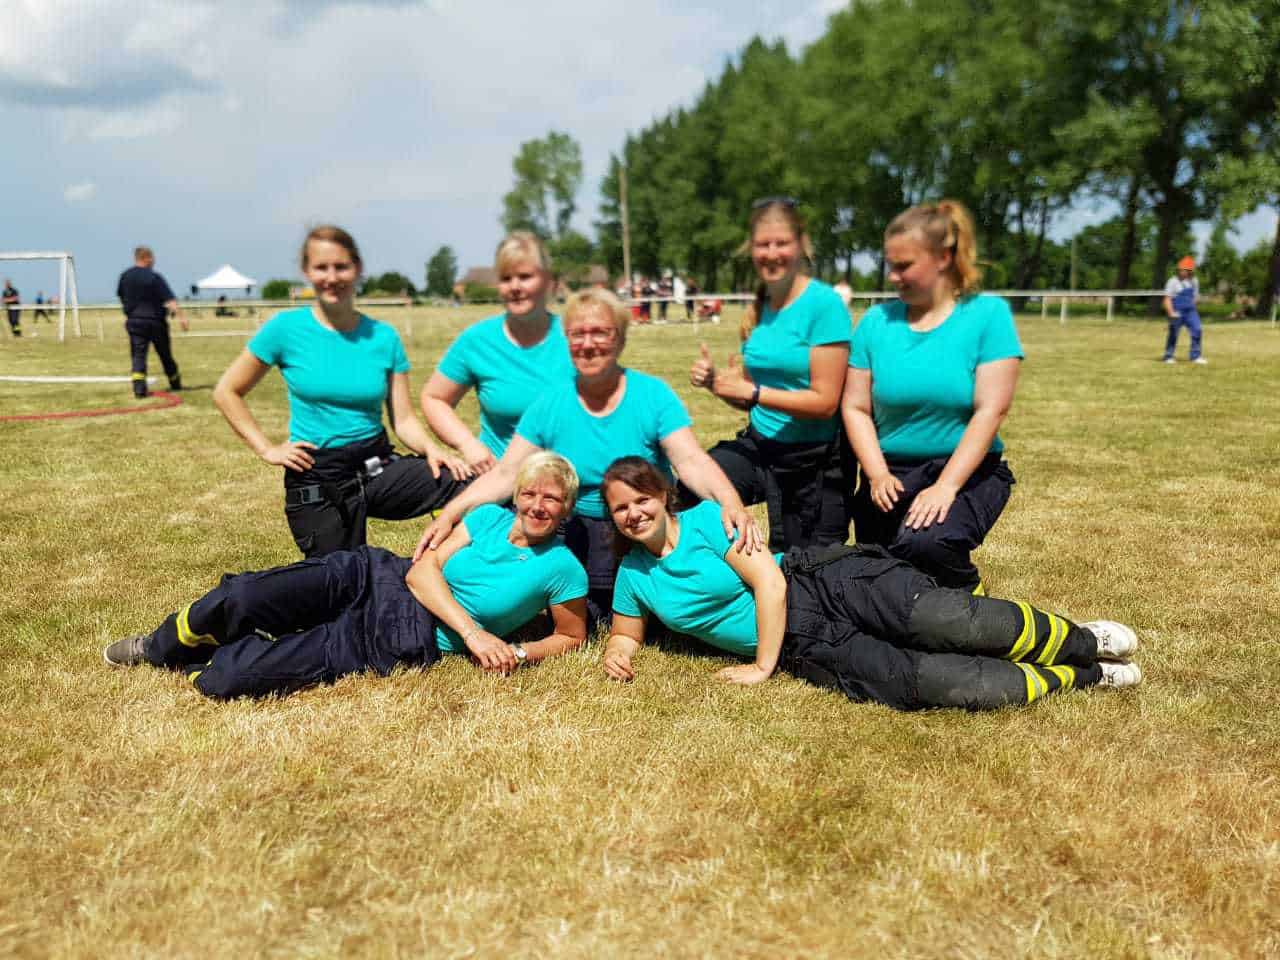 Glückwunsch zum 1.Platz - Feuerwehr - Frauenpower aus Schönow